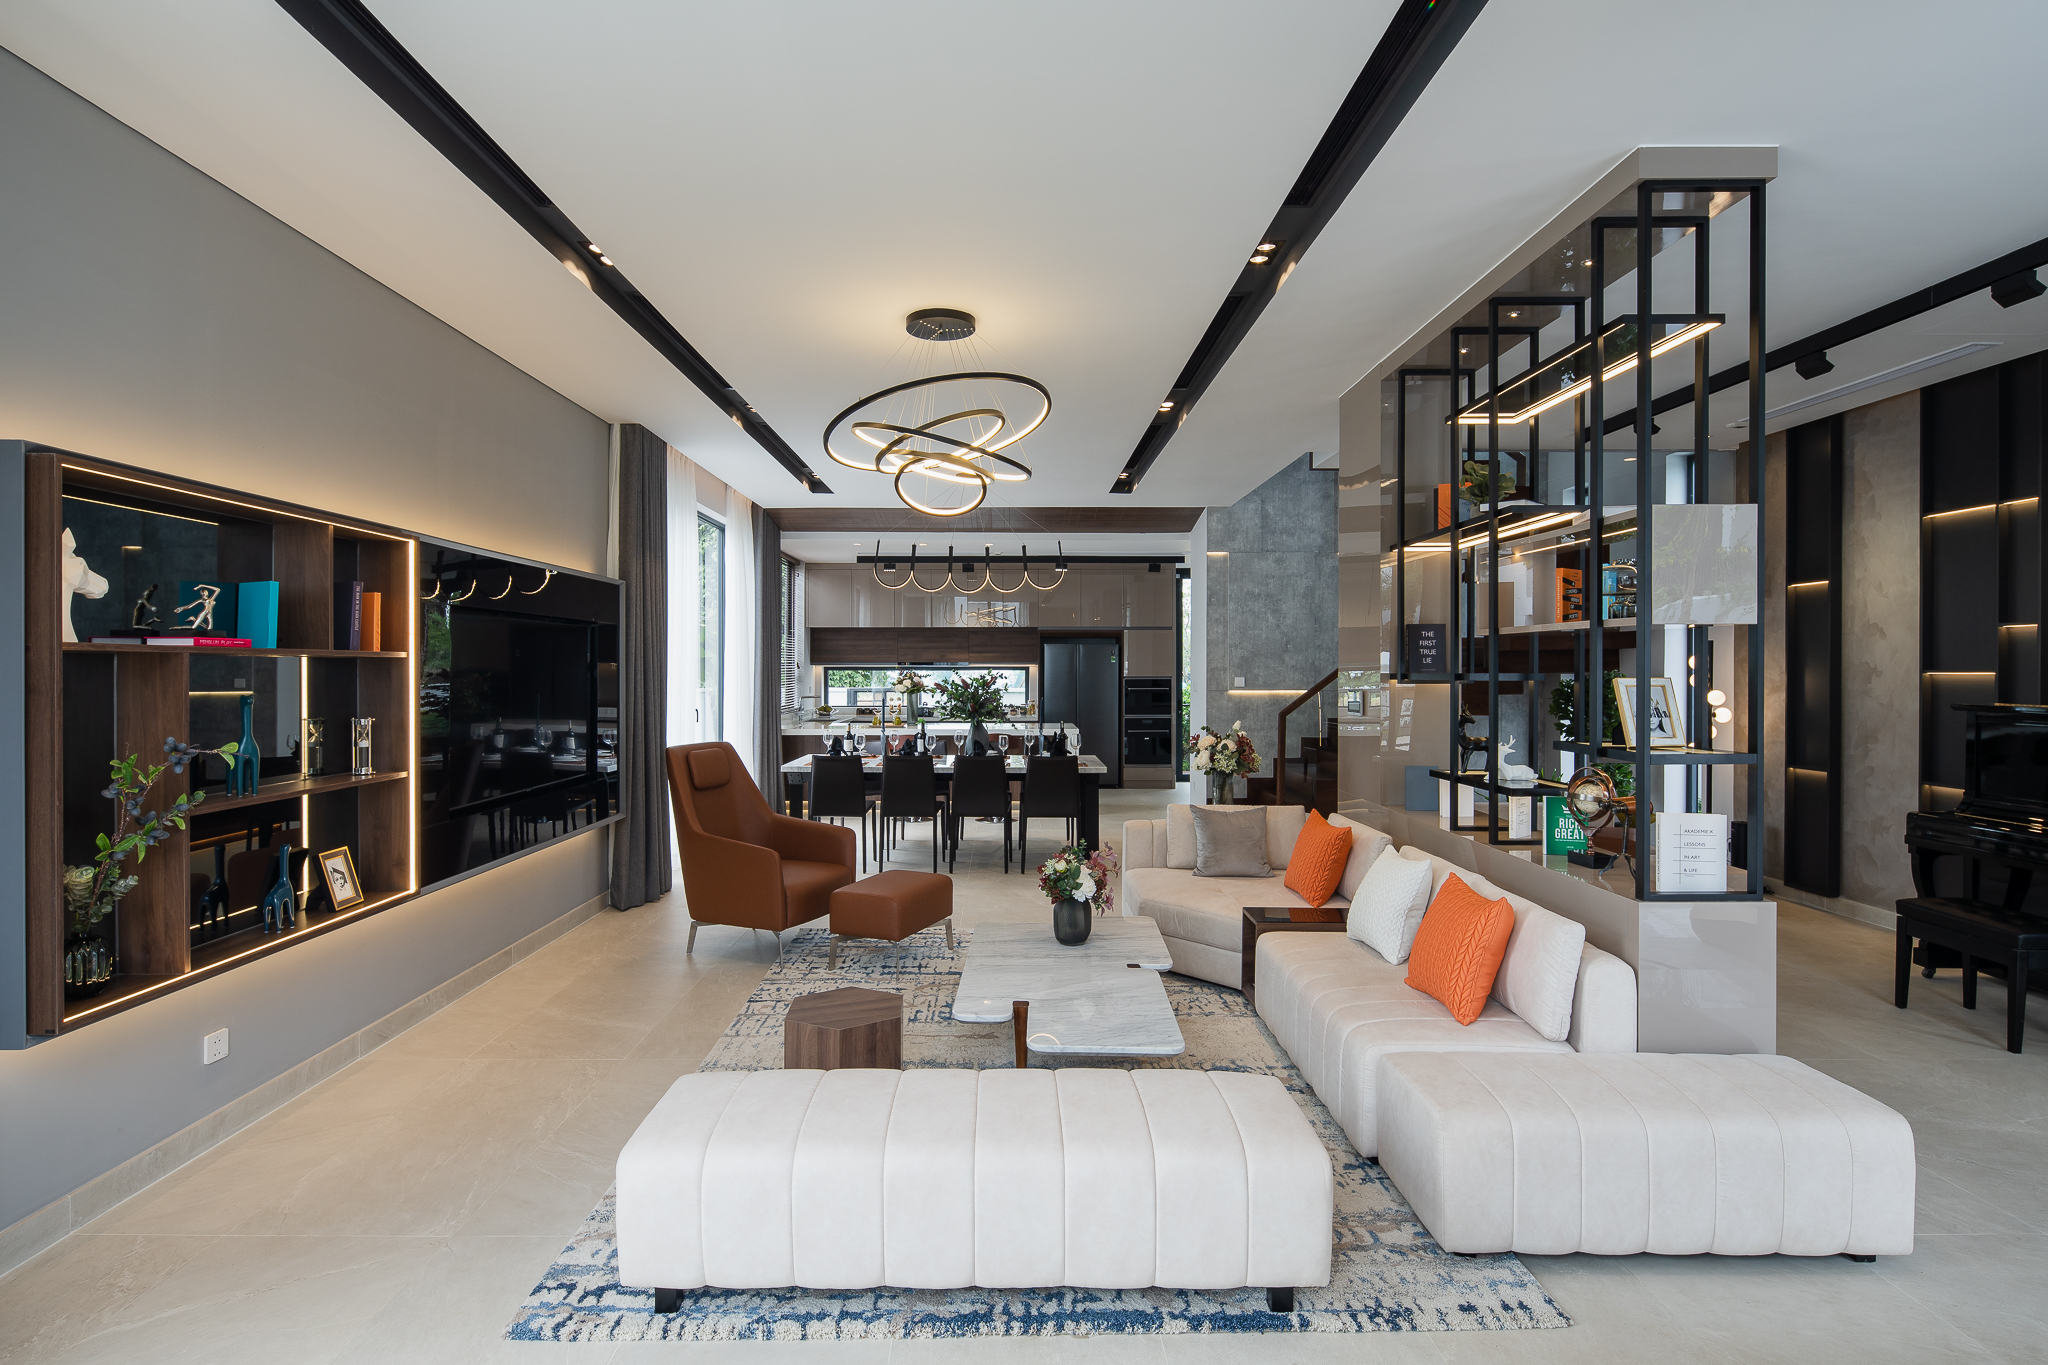 Deluxe contemporary villa interior design | Architect Magazine